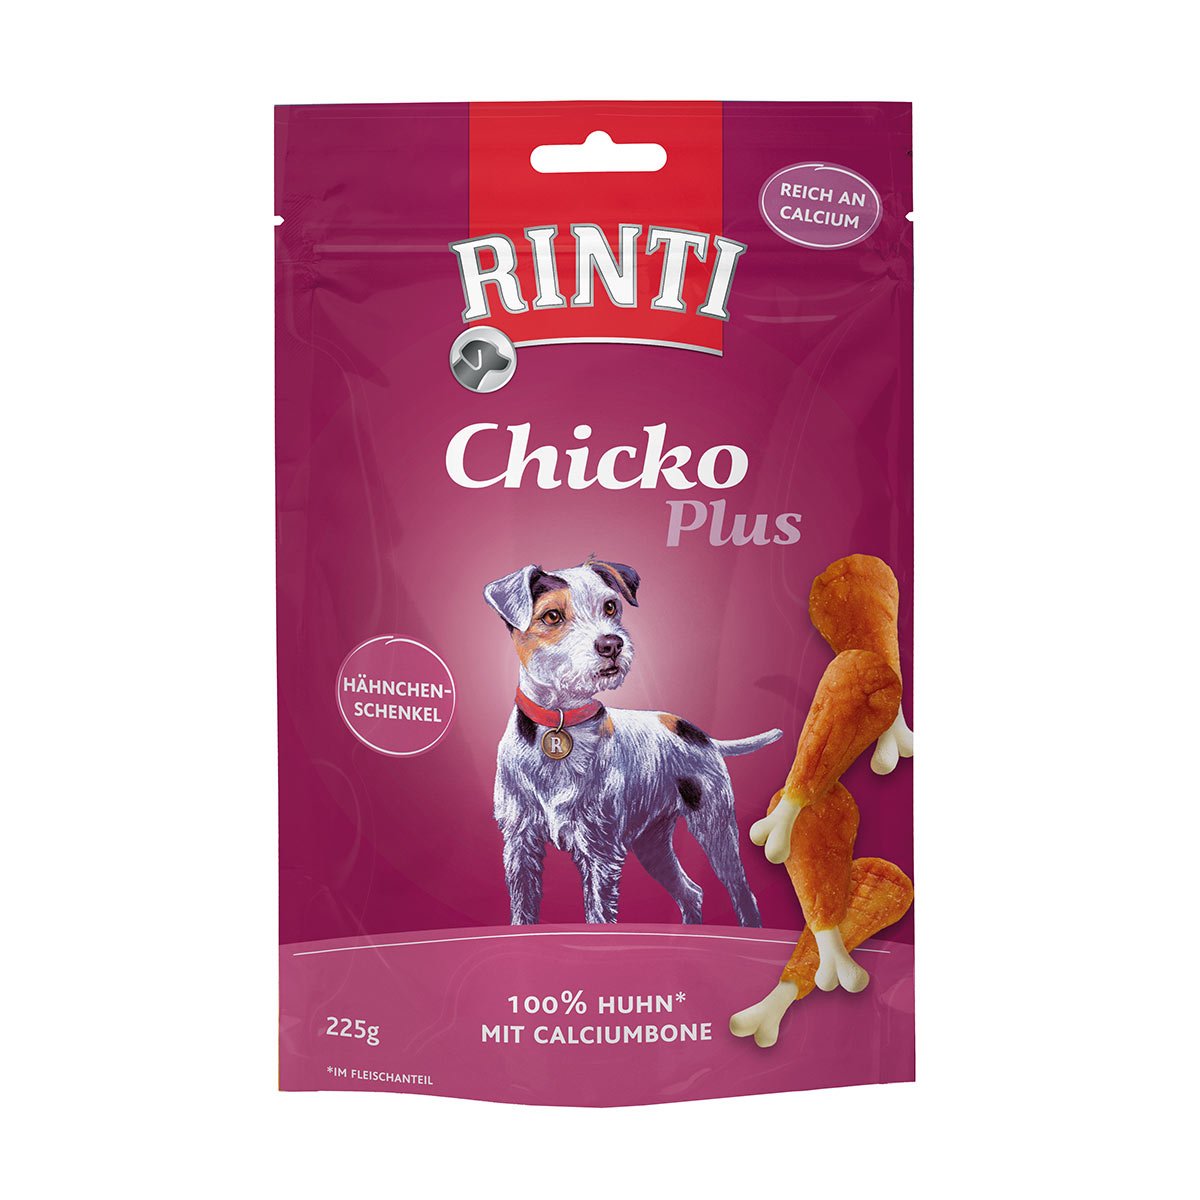 RINTI Chicko Plus Hähnchenschenkel 225g von Rinti